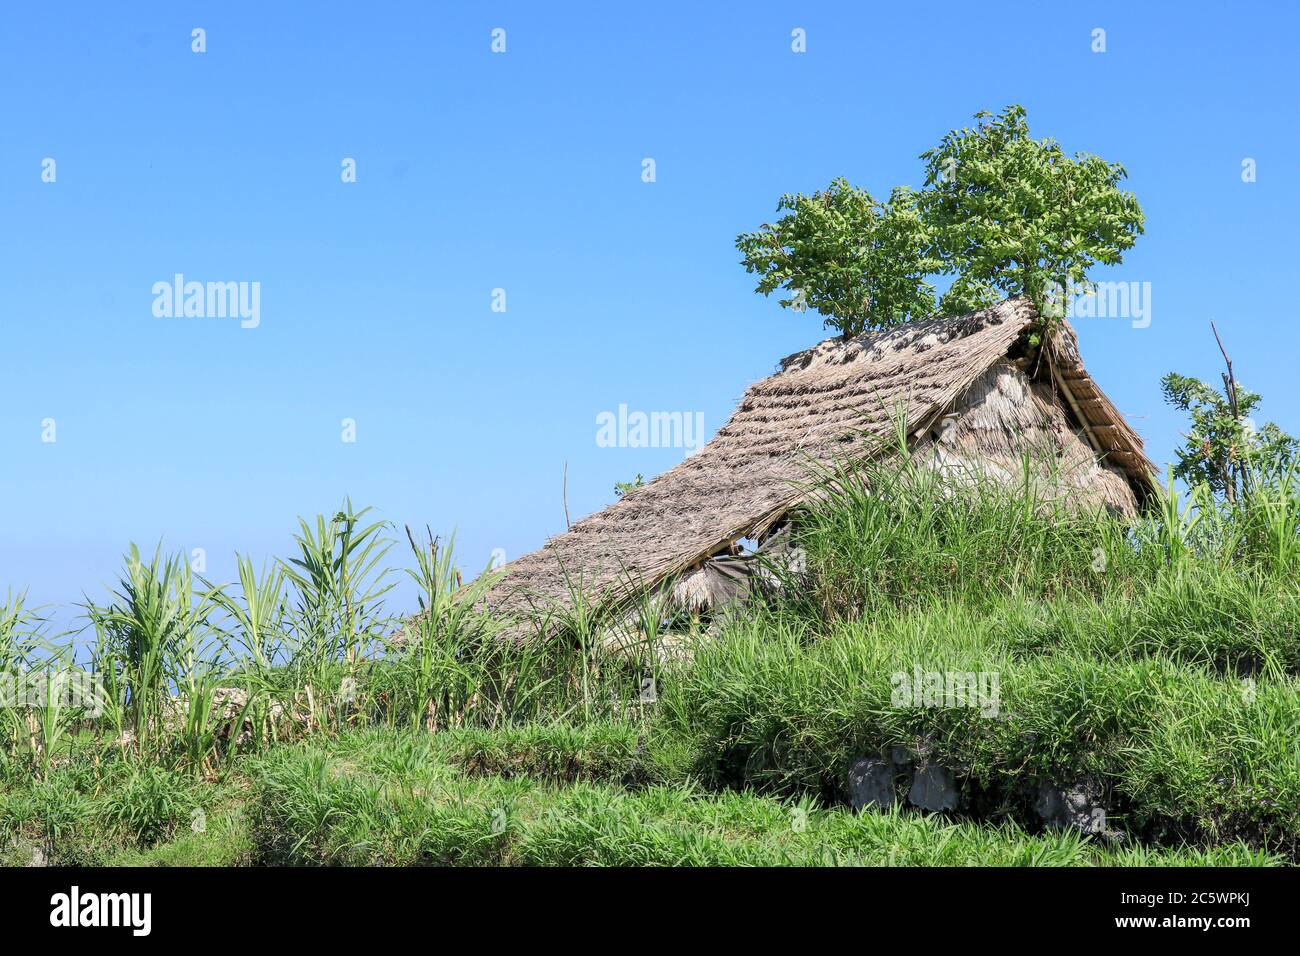 Umweltfreundliche Tribal Hut in Feldern mit Strohdach, aus biologisch abbaubaren Bambus Strohhalme und Sticks. Eine typische Hausform von Stammesgebieten, die von verwendet werden Stockfoto